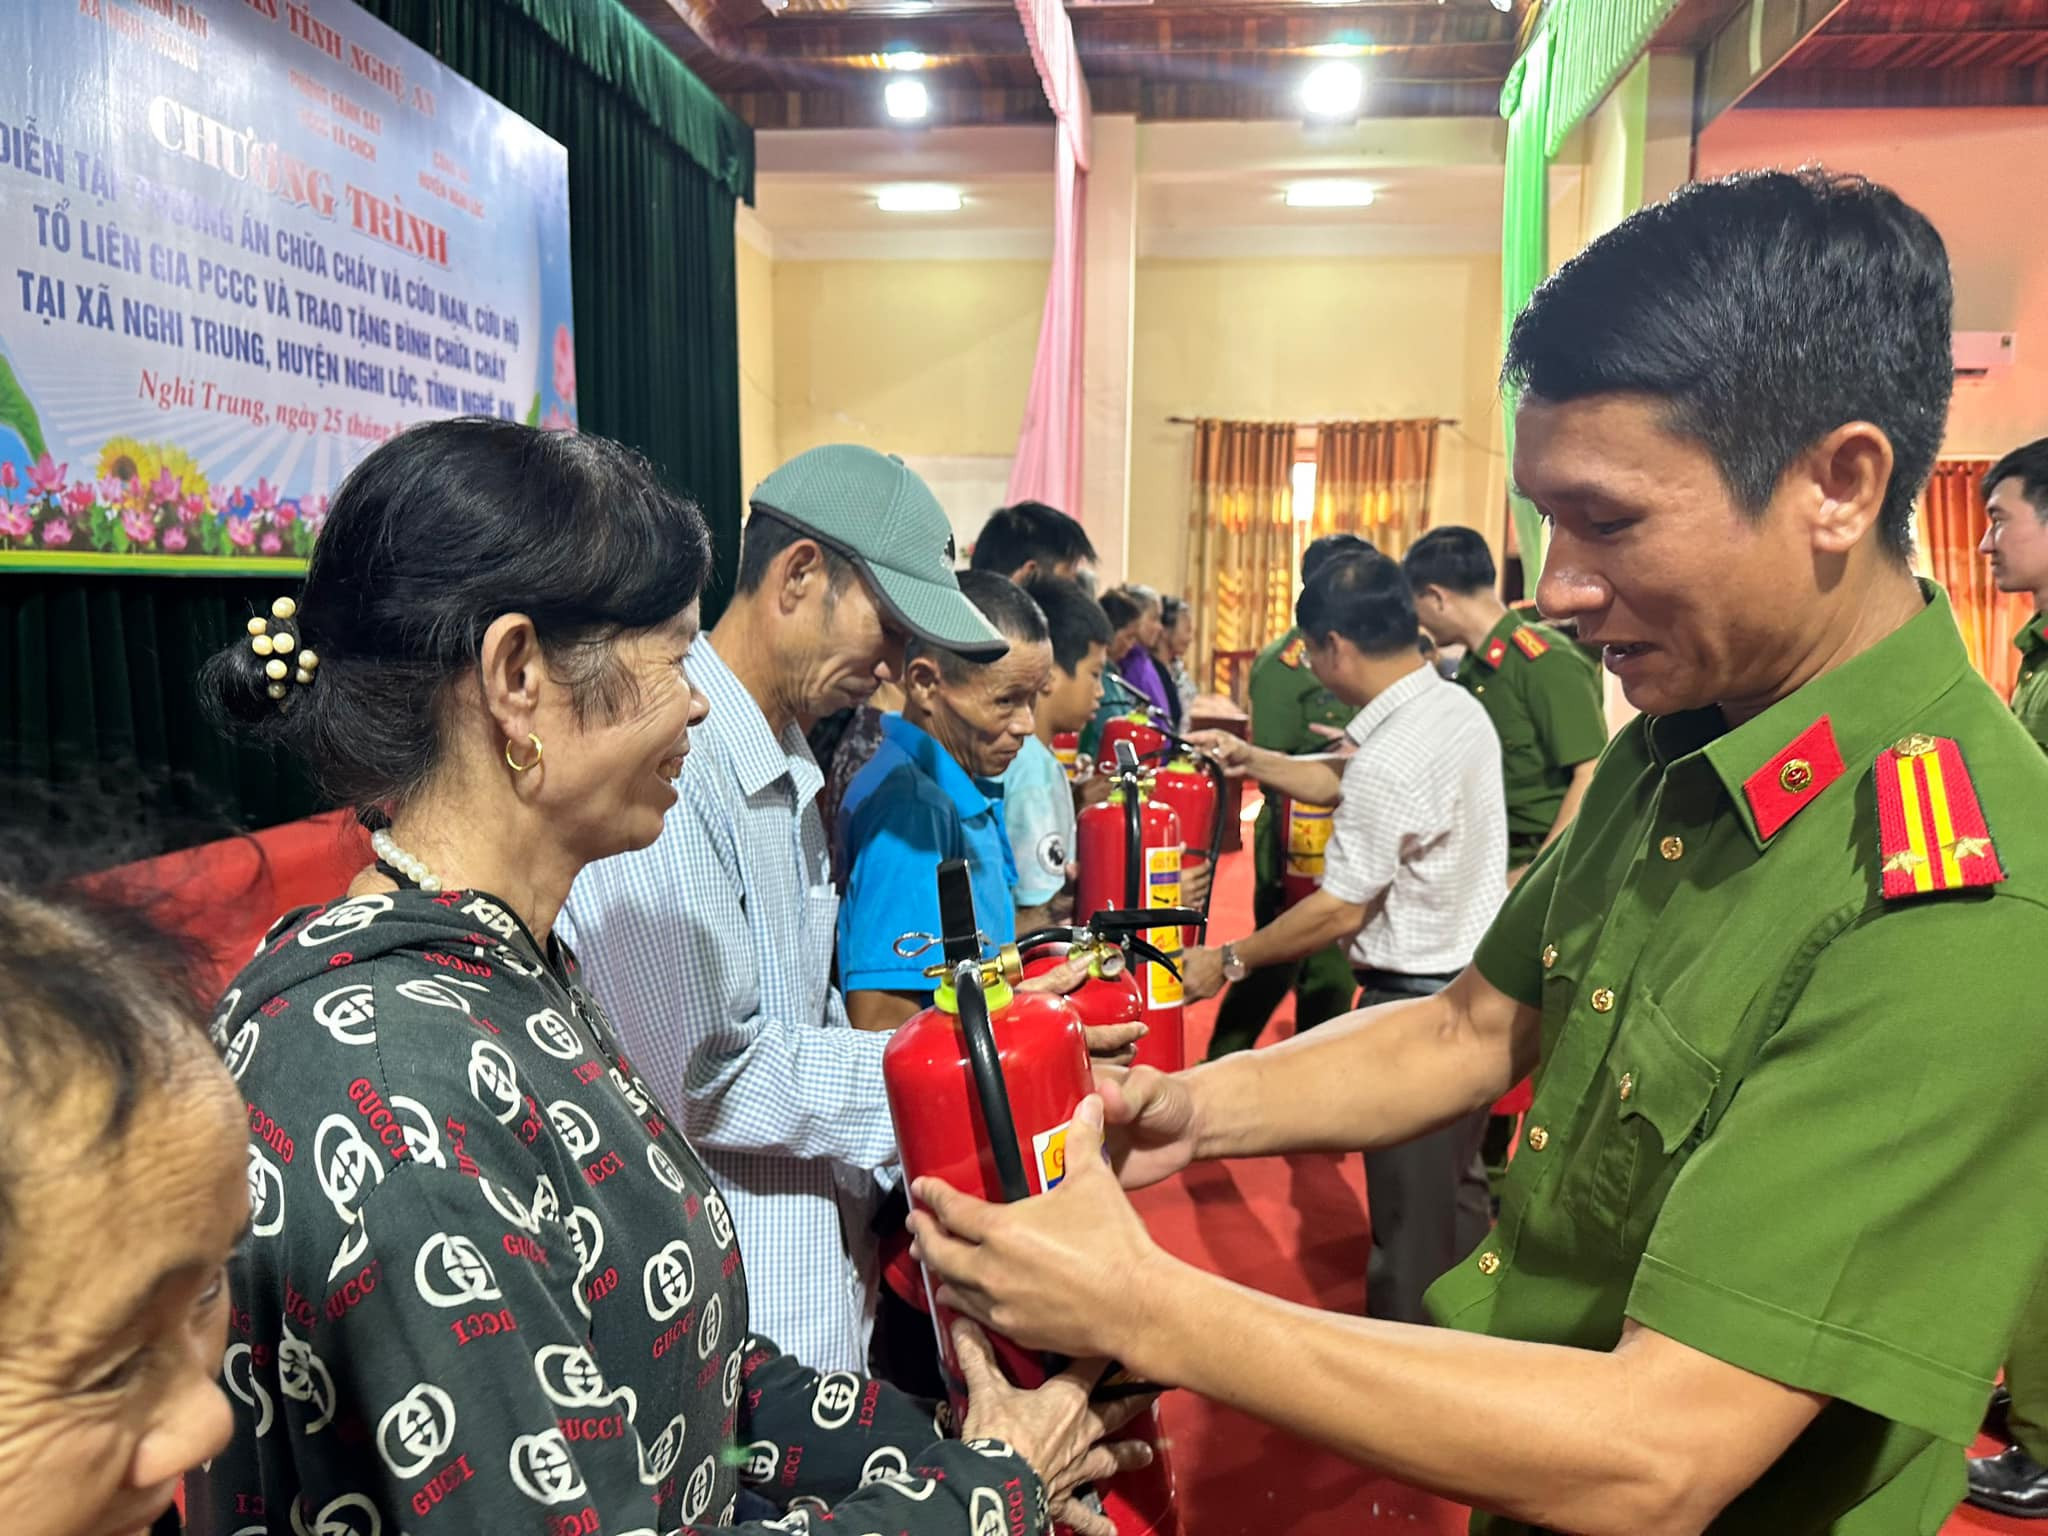 bna_Trưởng Công an huyện Nghi Lộc trao tặng bình chữa cháy cho các hộ gia đình trên địa bàn xã Nghi Trung. ảnh pv.jpg